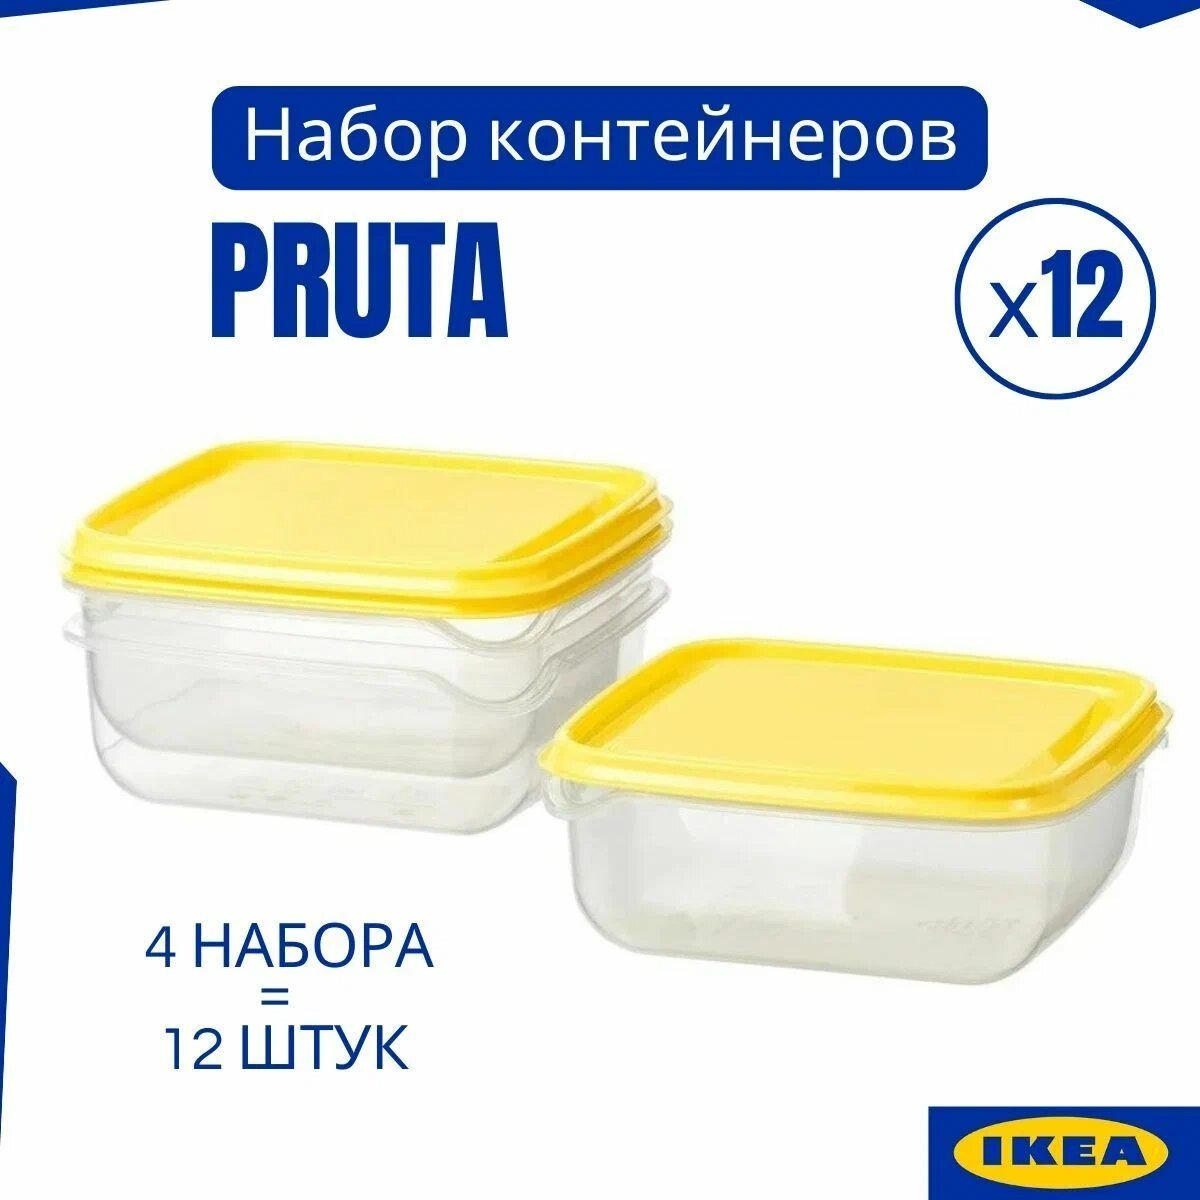 Контейнеры для хранения продуктов IKEA, набор 12 шт прута, прозрачный контейнер с крышкой PRUTA, ланчбокс